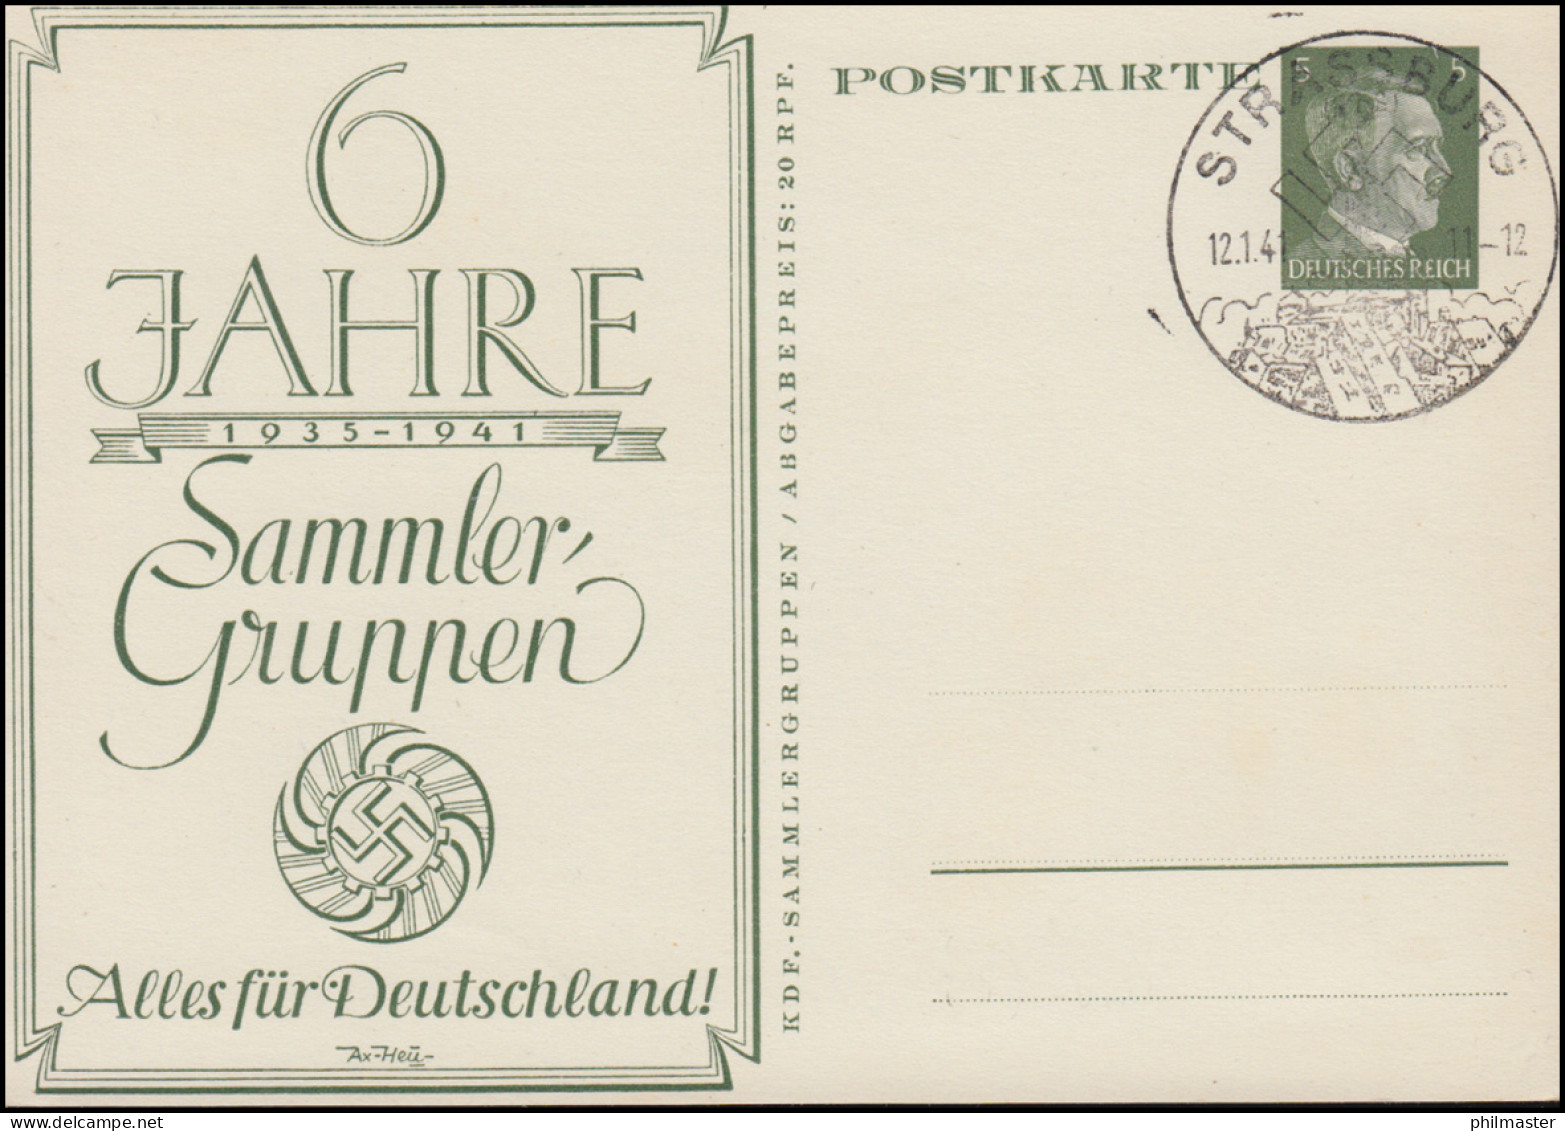 P 154 Alles Für Deutschland 60 Jahre Sammler-Guppen SSt STRASSBURG 12.1.1941 - Briefmarkenausstellungen